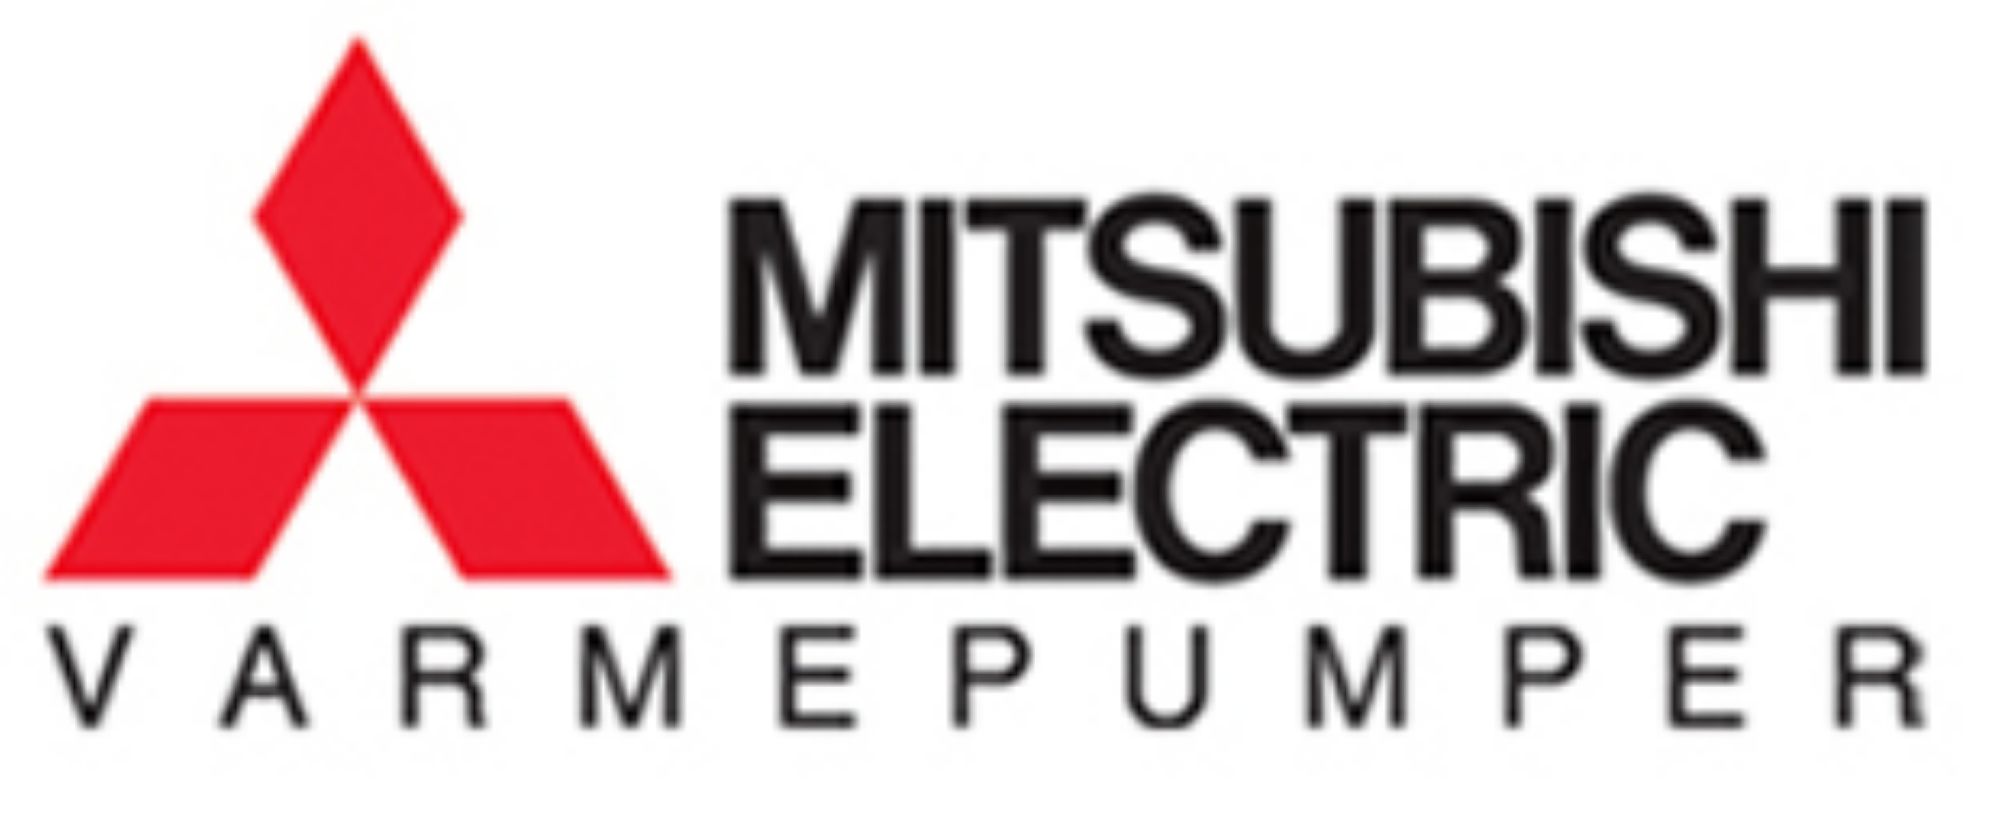 Mitsubishi electric varmepumper logo